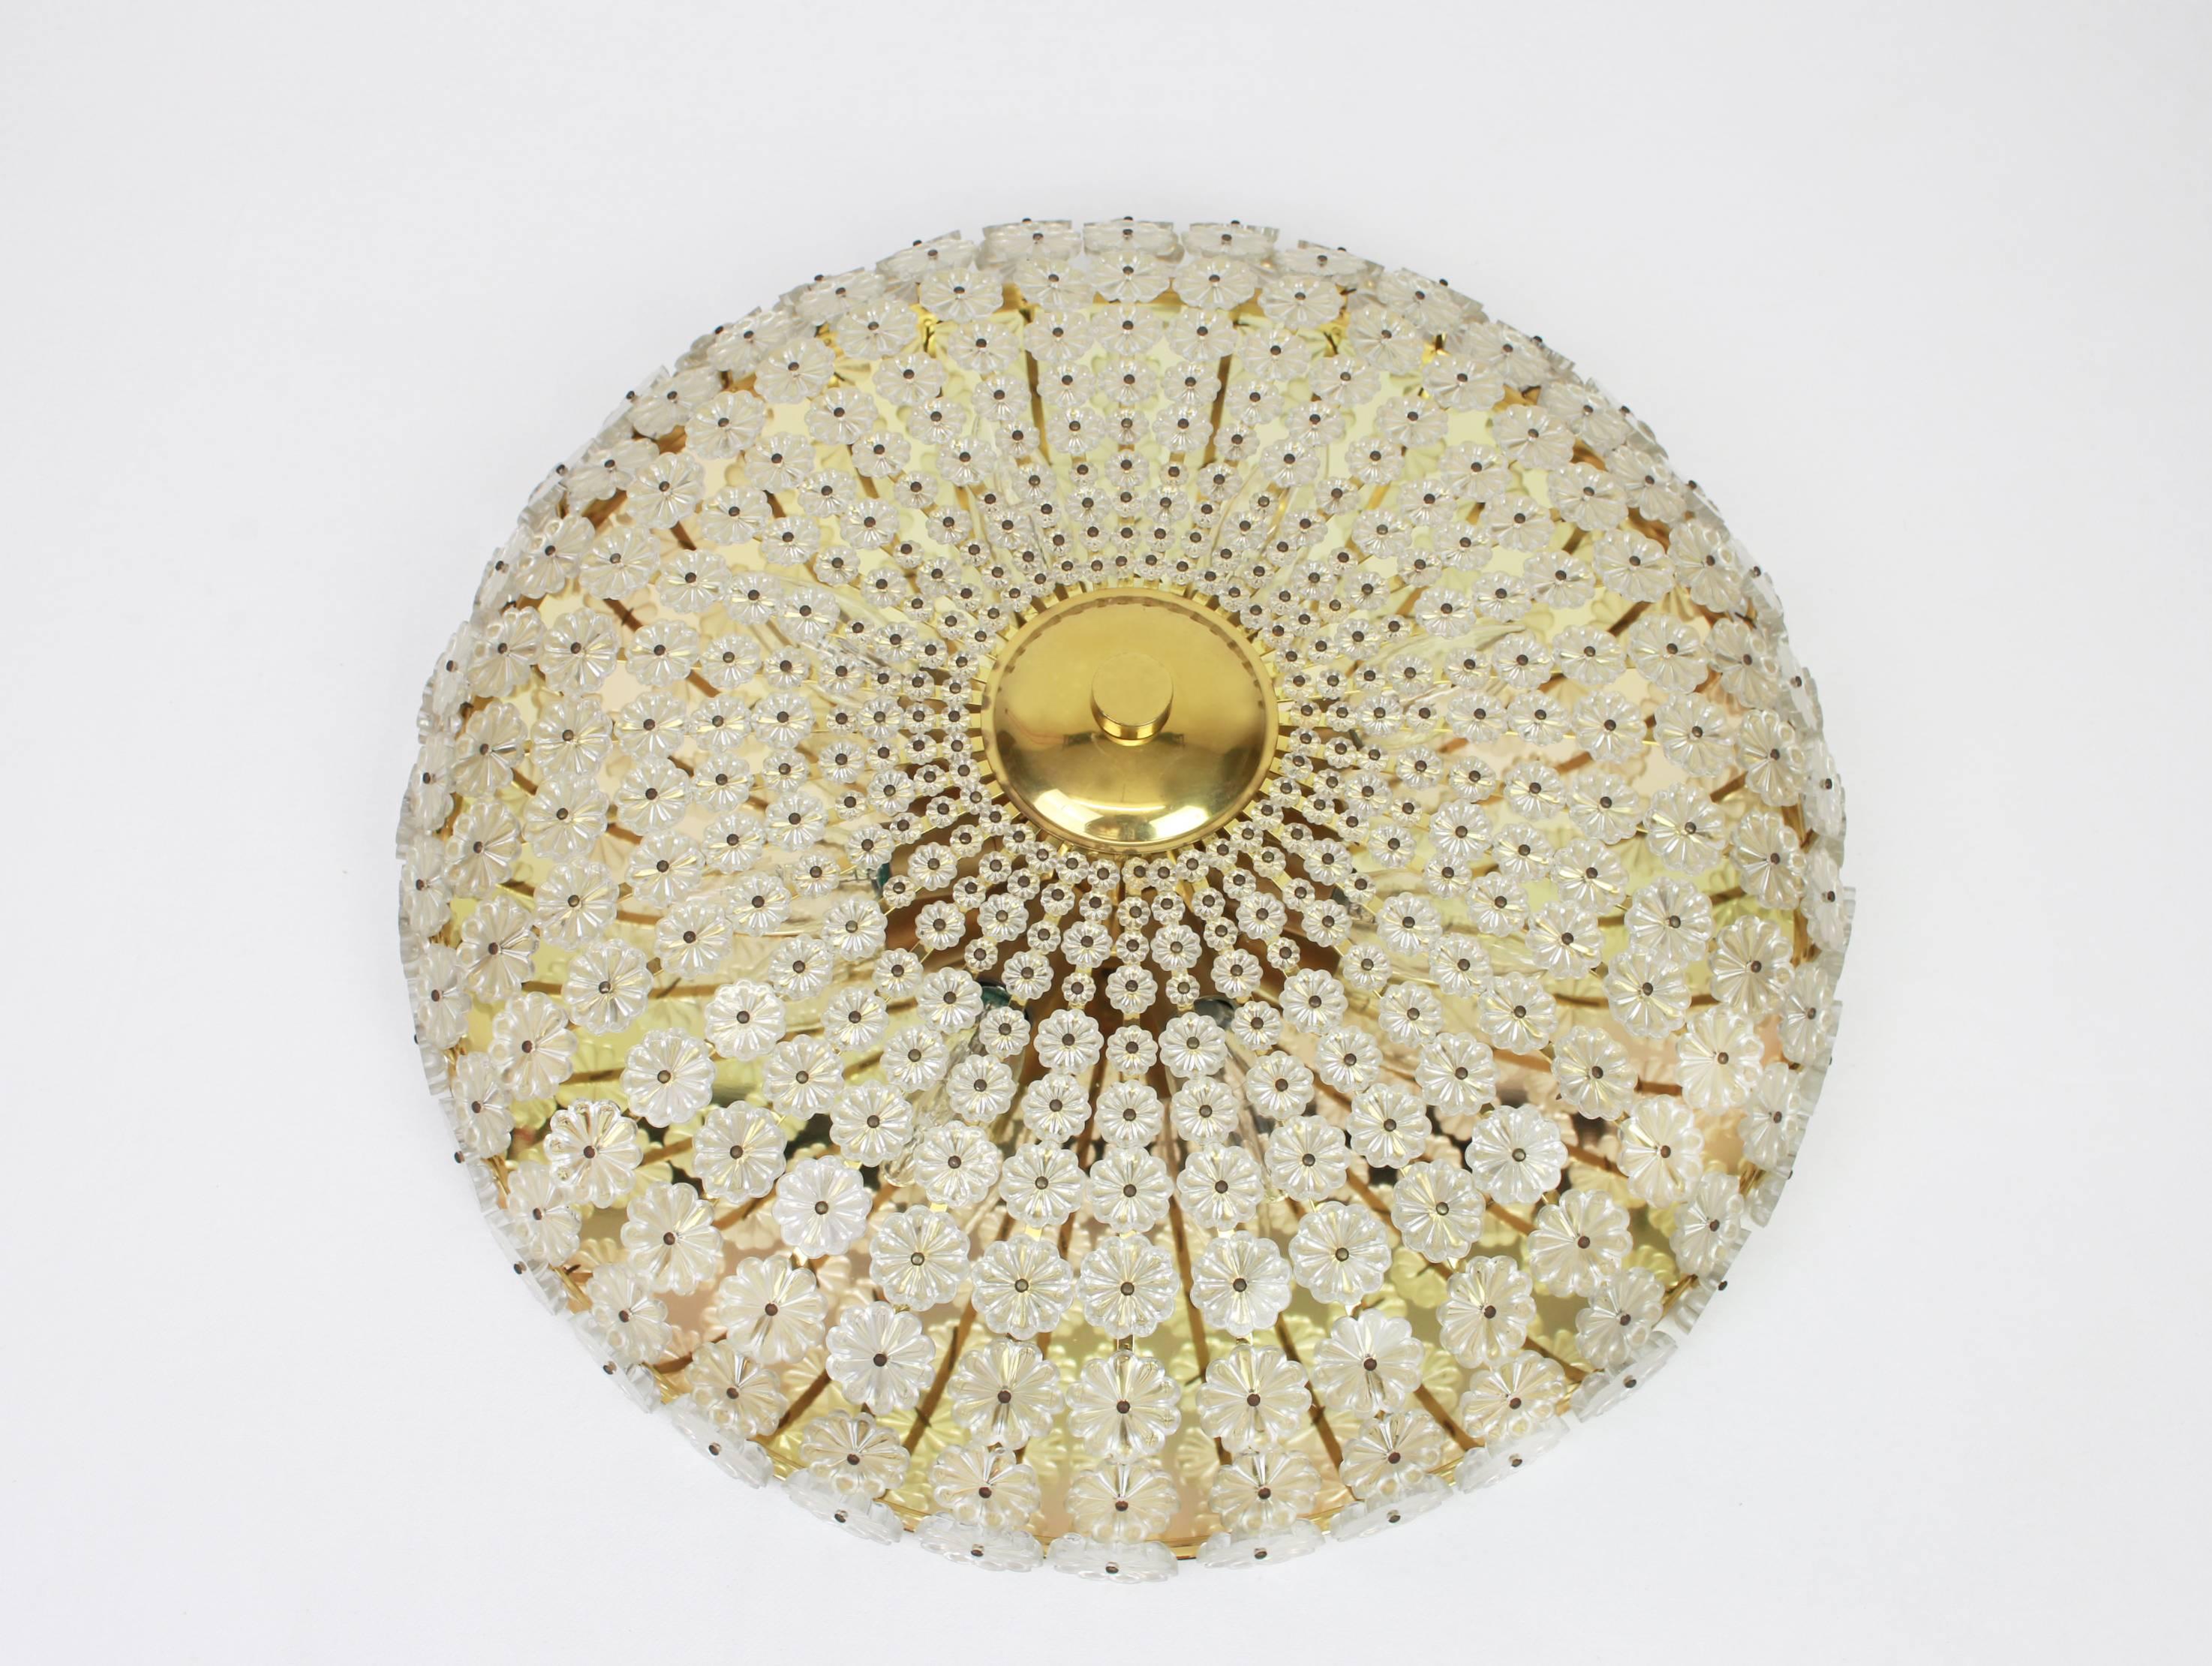 Grand montage encastré en forme de fleur conçu par Emil Stejnar en Autriche, dans les années 1960.
Il est composé d'un cadre en laiton et de centaines de verres en cristal qui entourent le cadre pour créer un motif spectaculaire en forme de